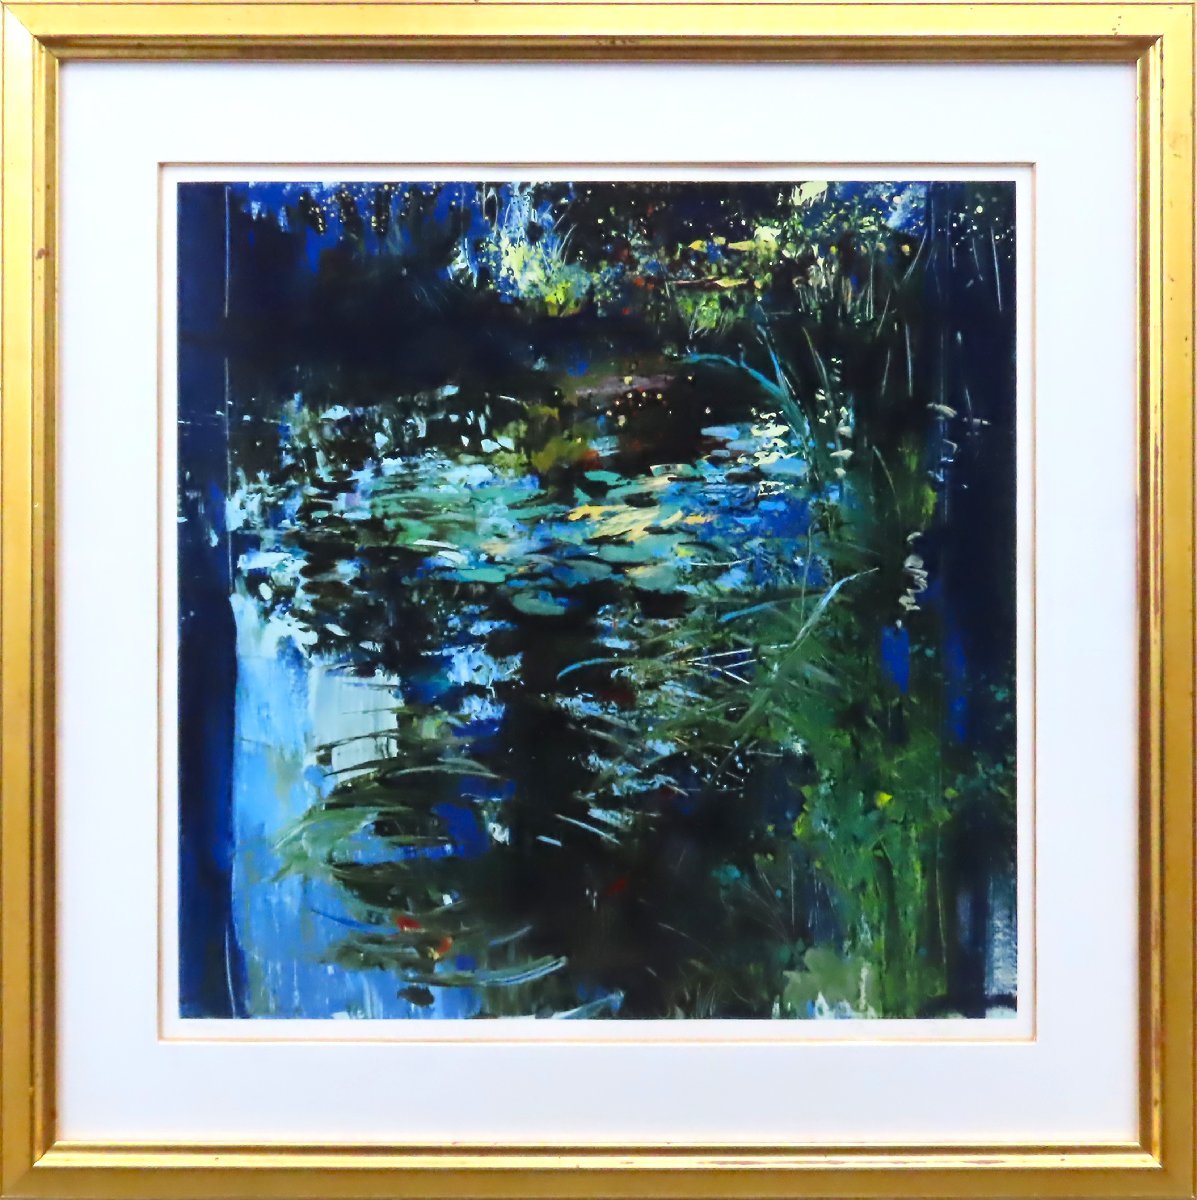 [Authentisches Werk] [Masamitsu-Galerie] Trenz Ryad Blue Water Surface Siebdruck Dies ist ein attraktives Werk mit lebendigen Farben und einem lebhaften Tanz-Touch*, Kunstwerk, drucken, Siebdruck